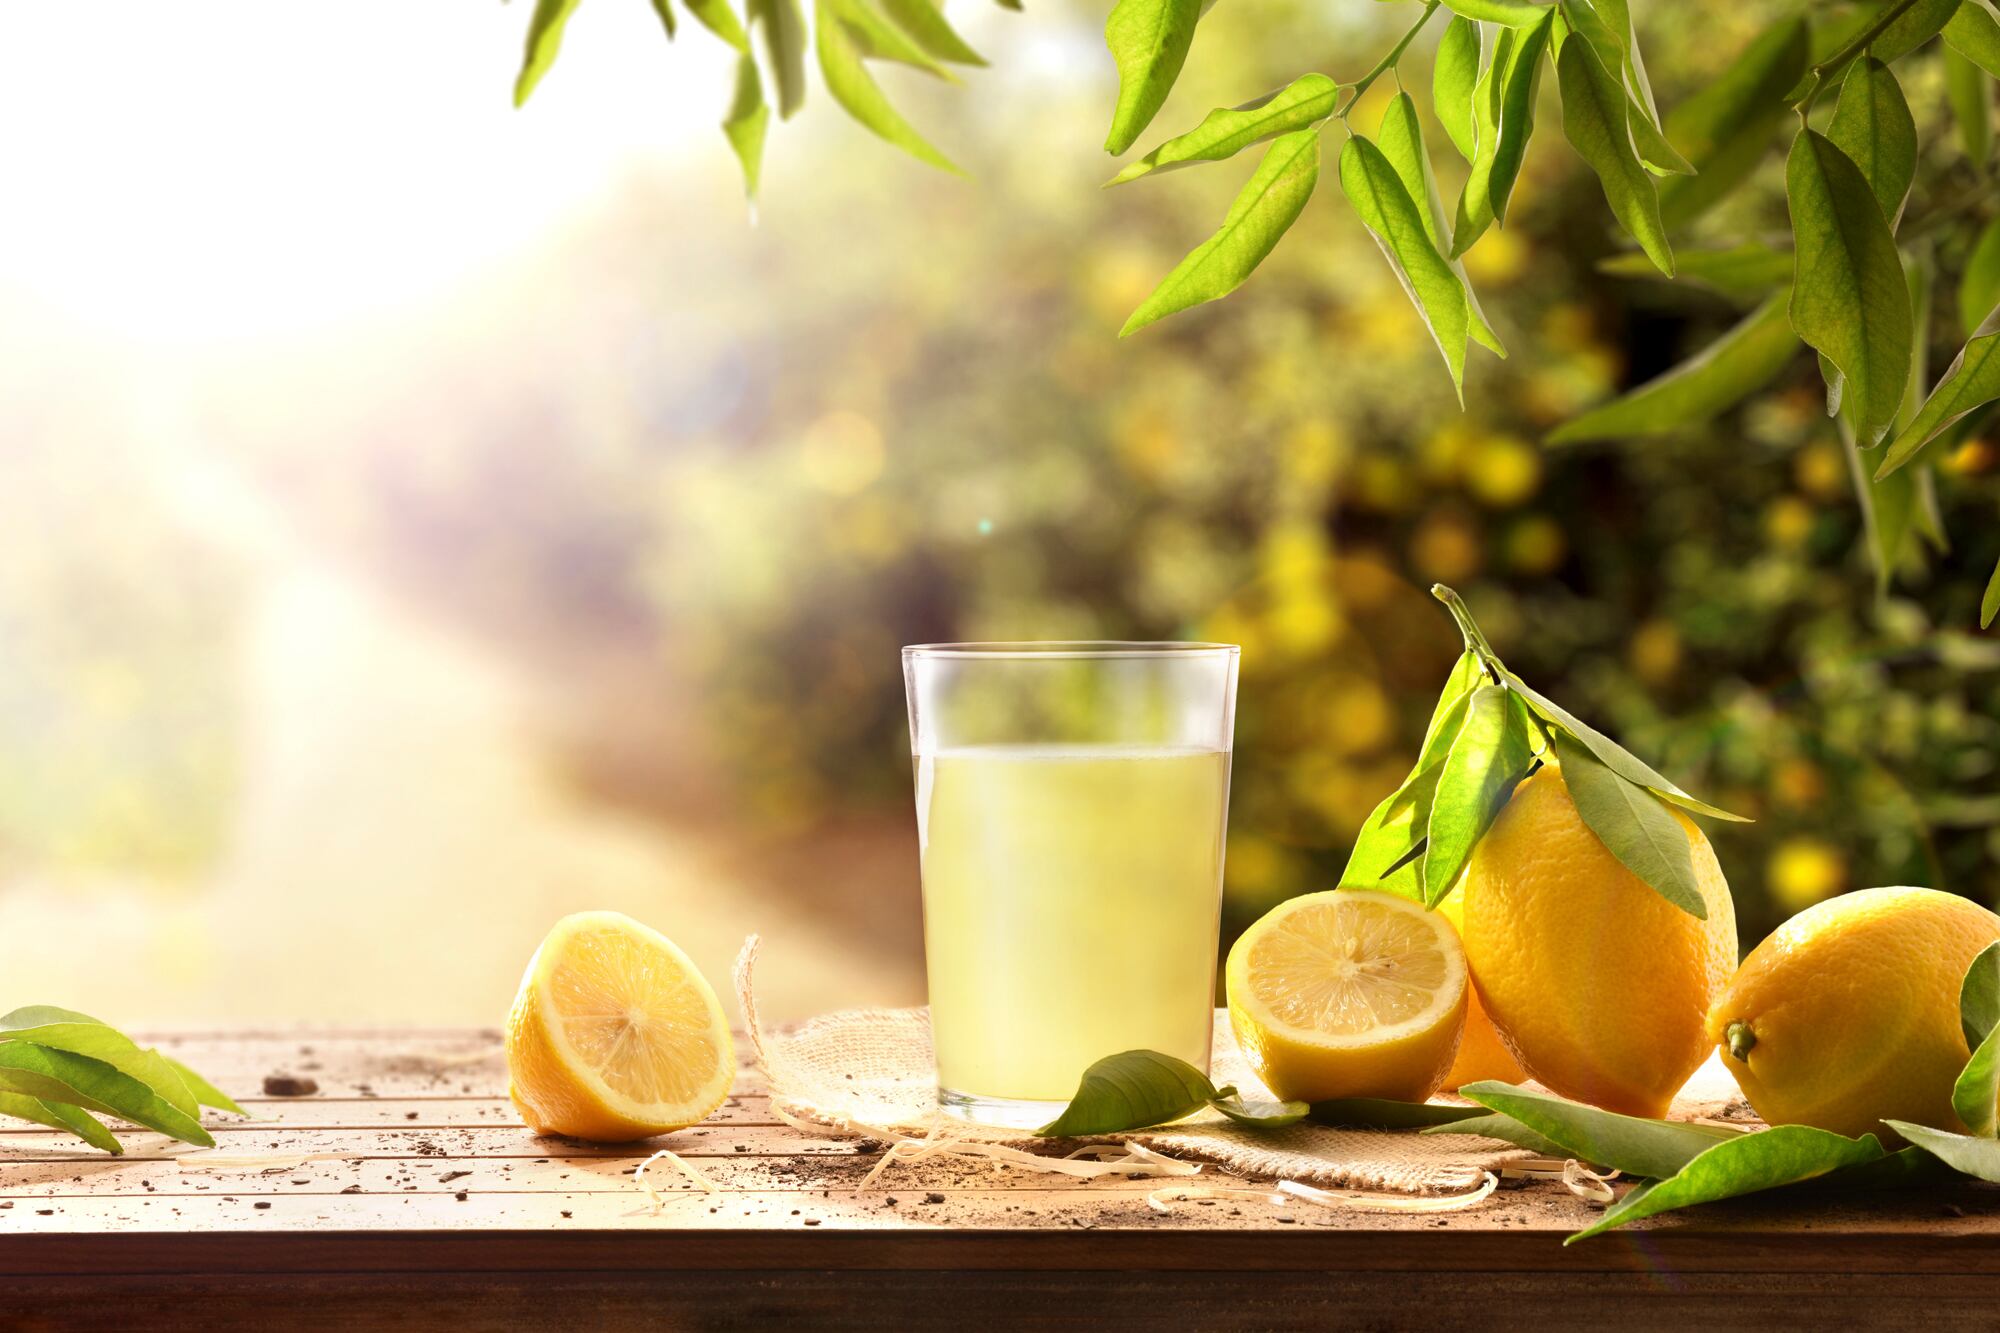 El jugo de limón contiene diferentes propiedades nutricionales que ayudarán a que tu organismo funcione de manera óptima